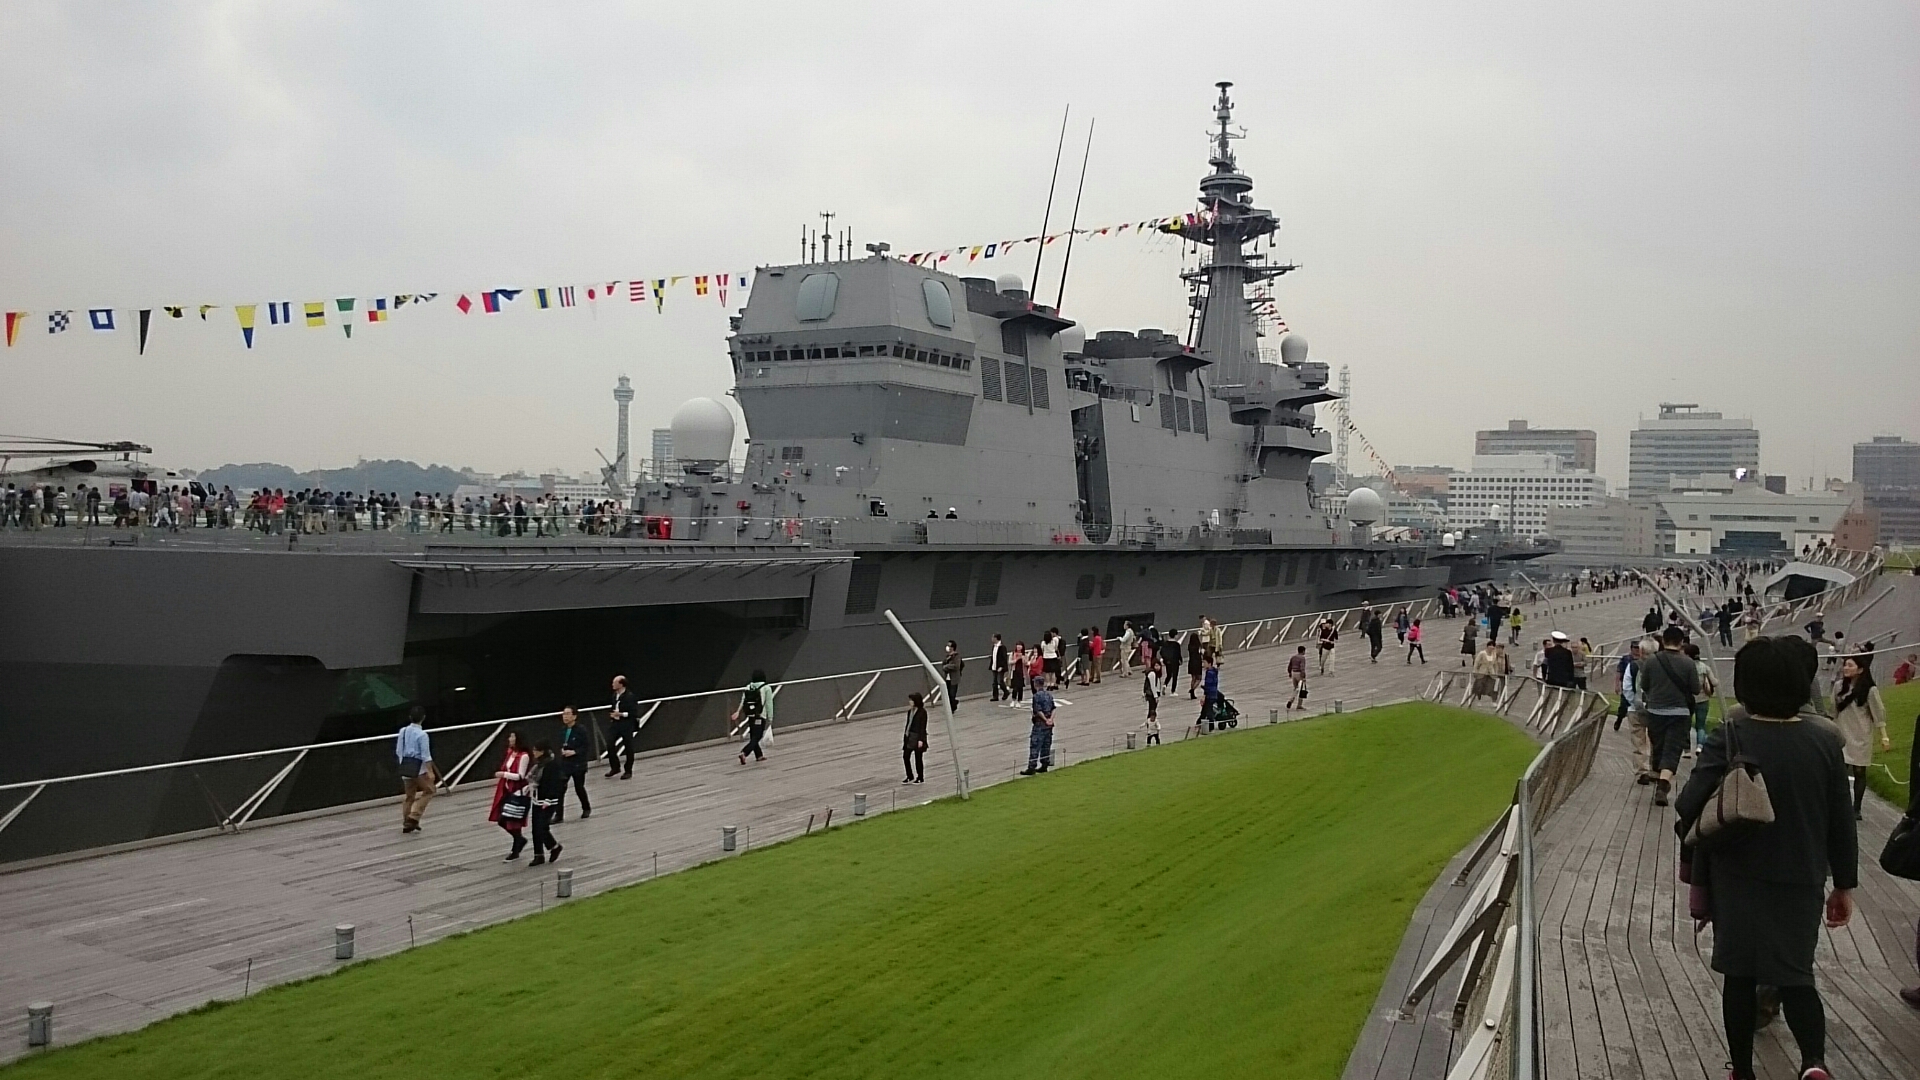 観艦式 海上自衛隊 護衛艦 いずも 一般公開 １０月１０日 横浜大桟橋 ぱんこの撮影日記 分館